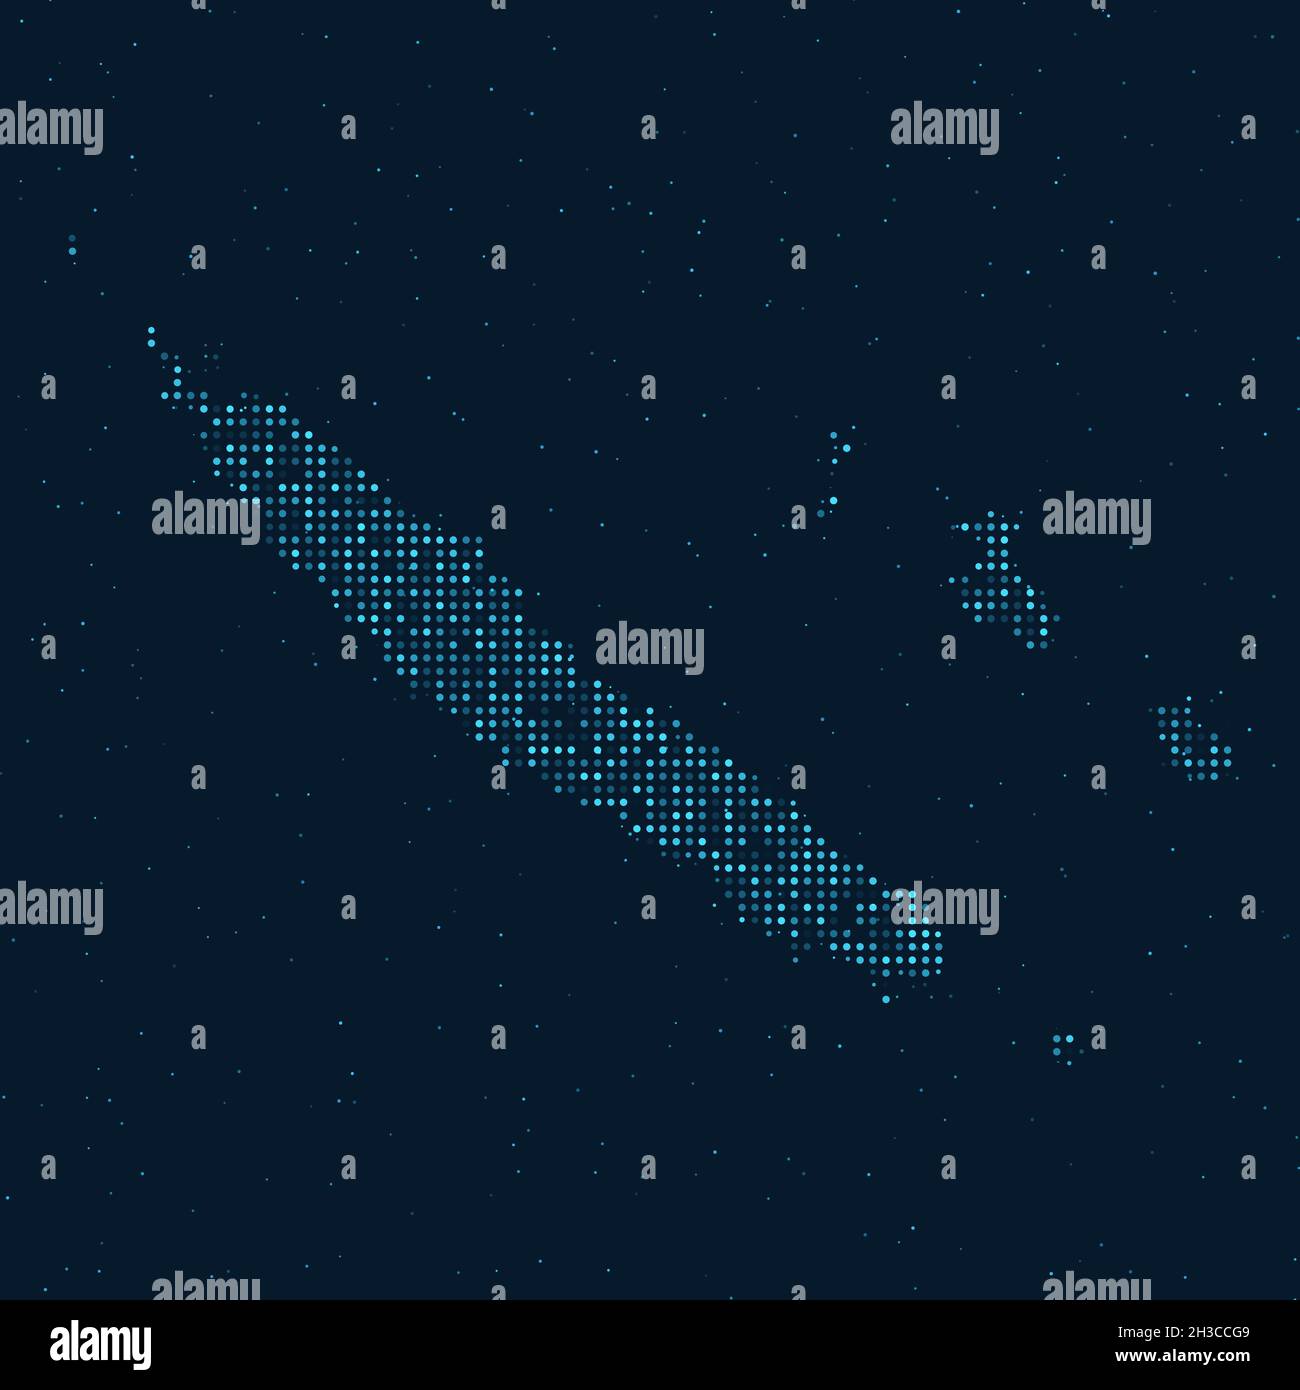 Mezzitoni astratti punteggiati con effetto stellato su sfondo blu scuro con mappa della Nuova Caledonia. Tecnologia digitale punteggiata, sfera e struttura di design. Illustrazione Vettoriale